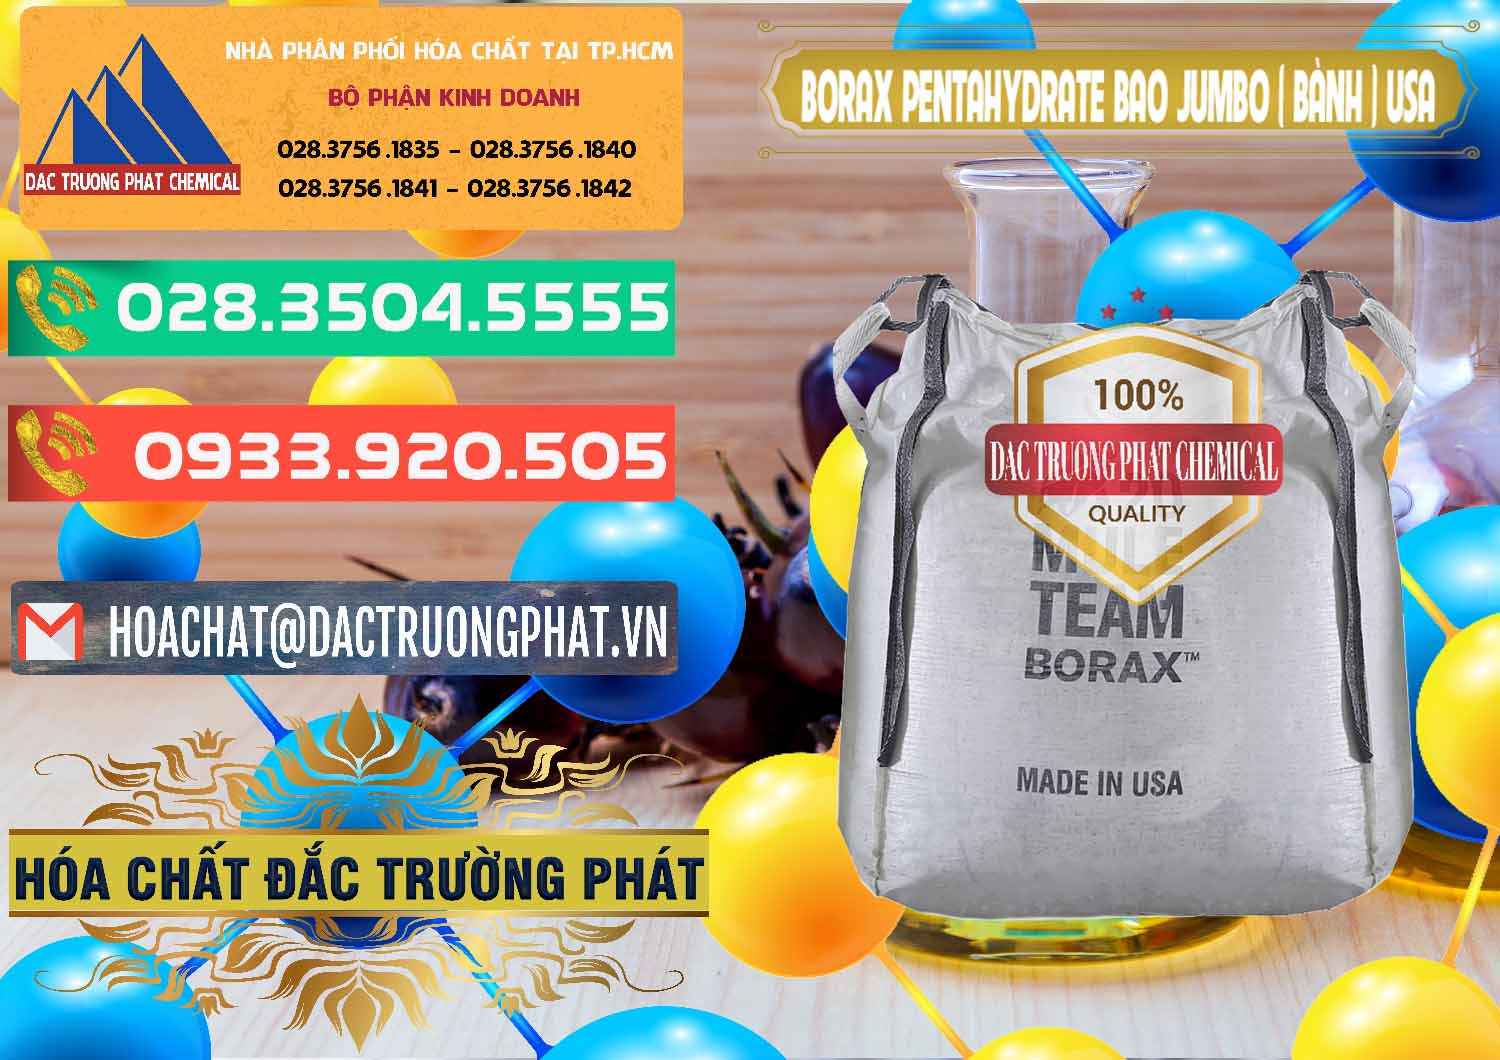 Công ty chuyên cung cấp và bán Borax Pentahydrate Bao Jumbo ( Bành ) Mule 20 Team Mỹ Usa - 0278 - Chuyên cung ứng _ phân phối hóa chất tại TP.HCM - congtyhoachat.com.vn